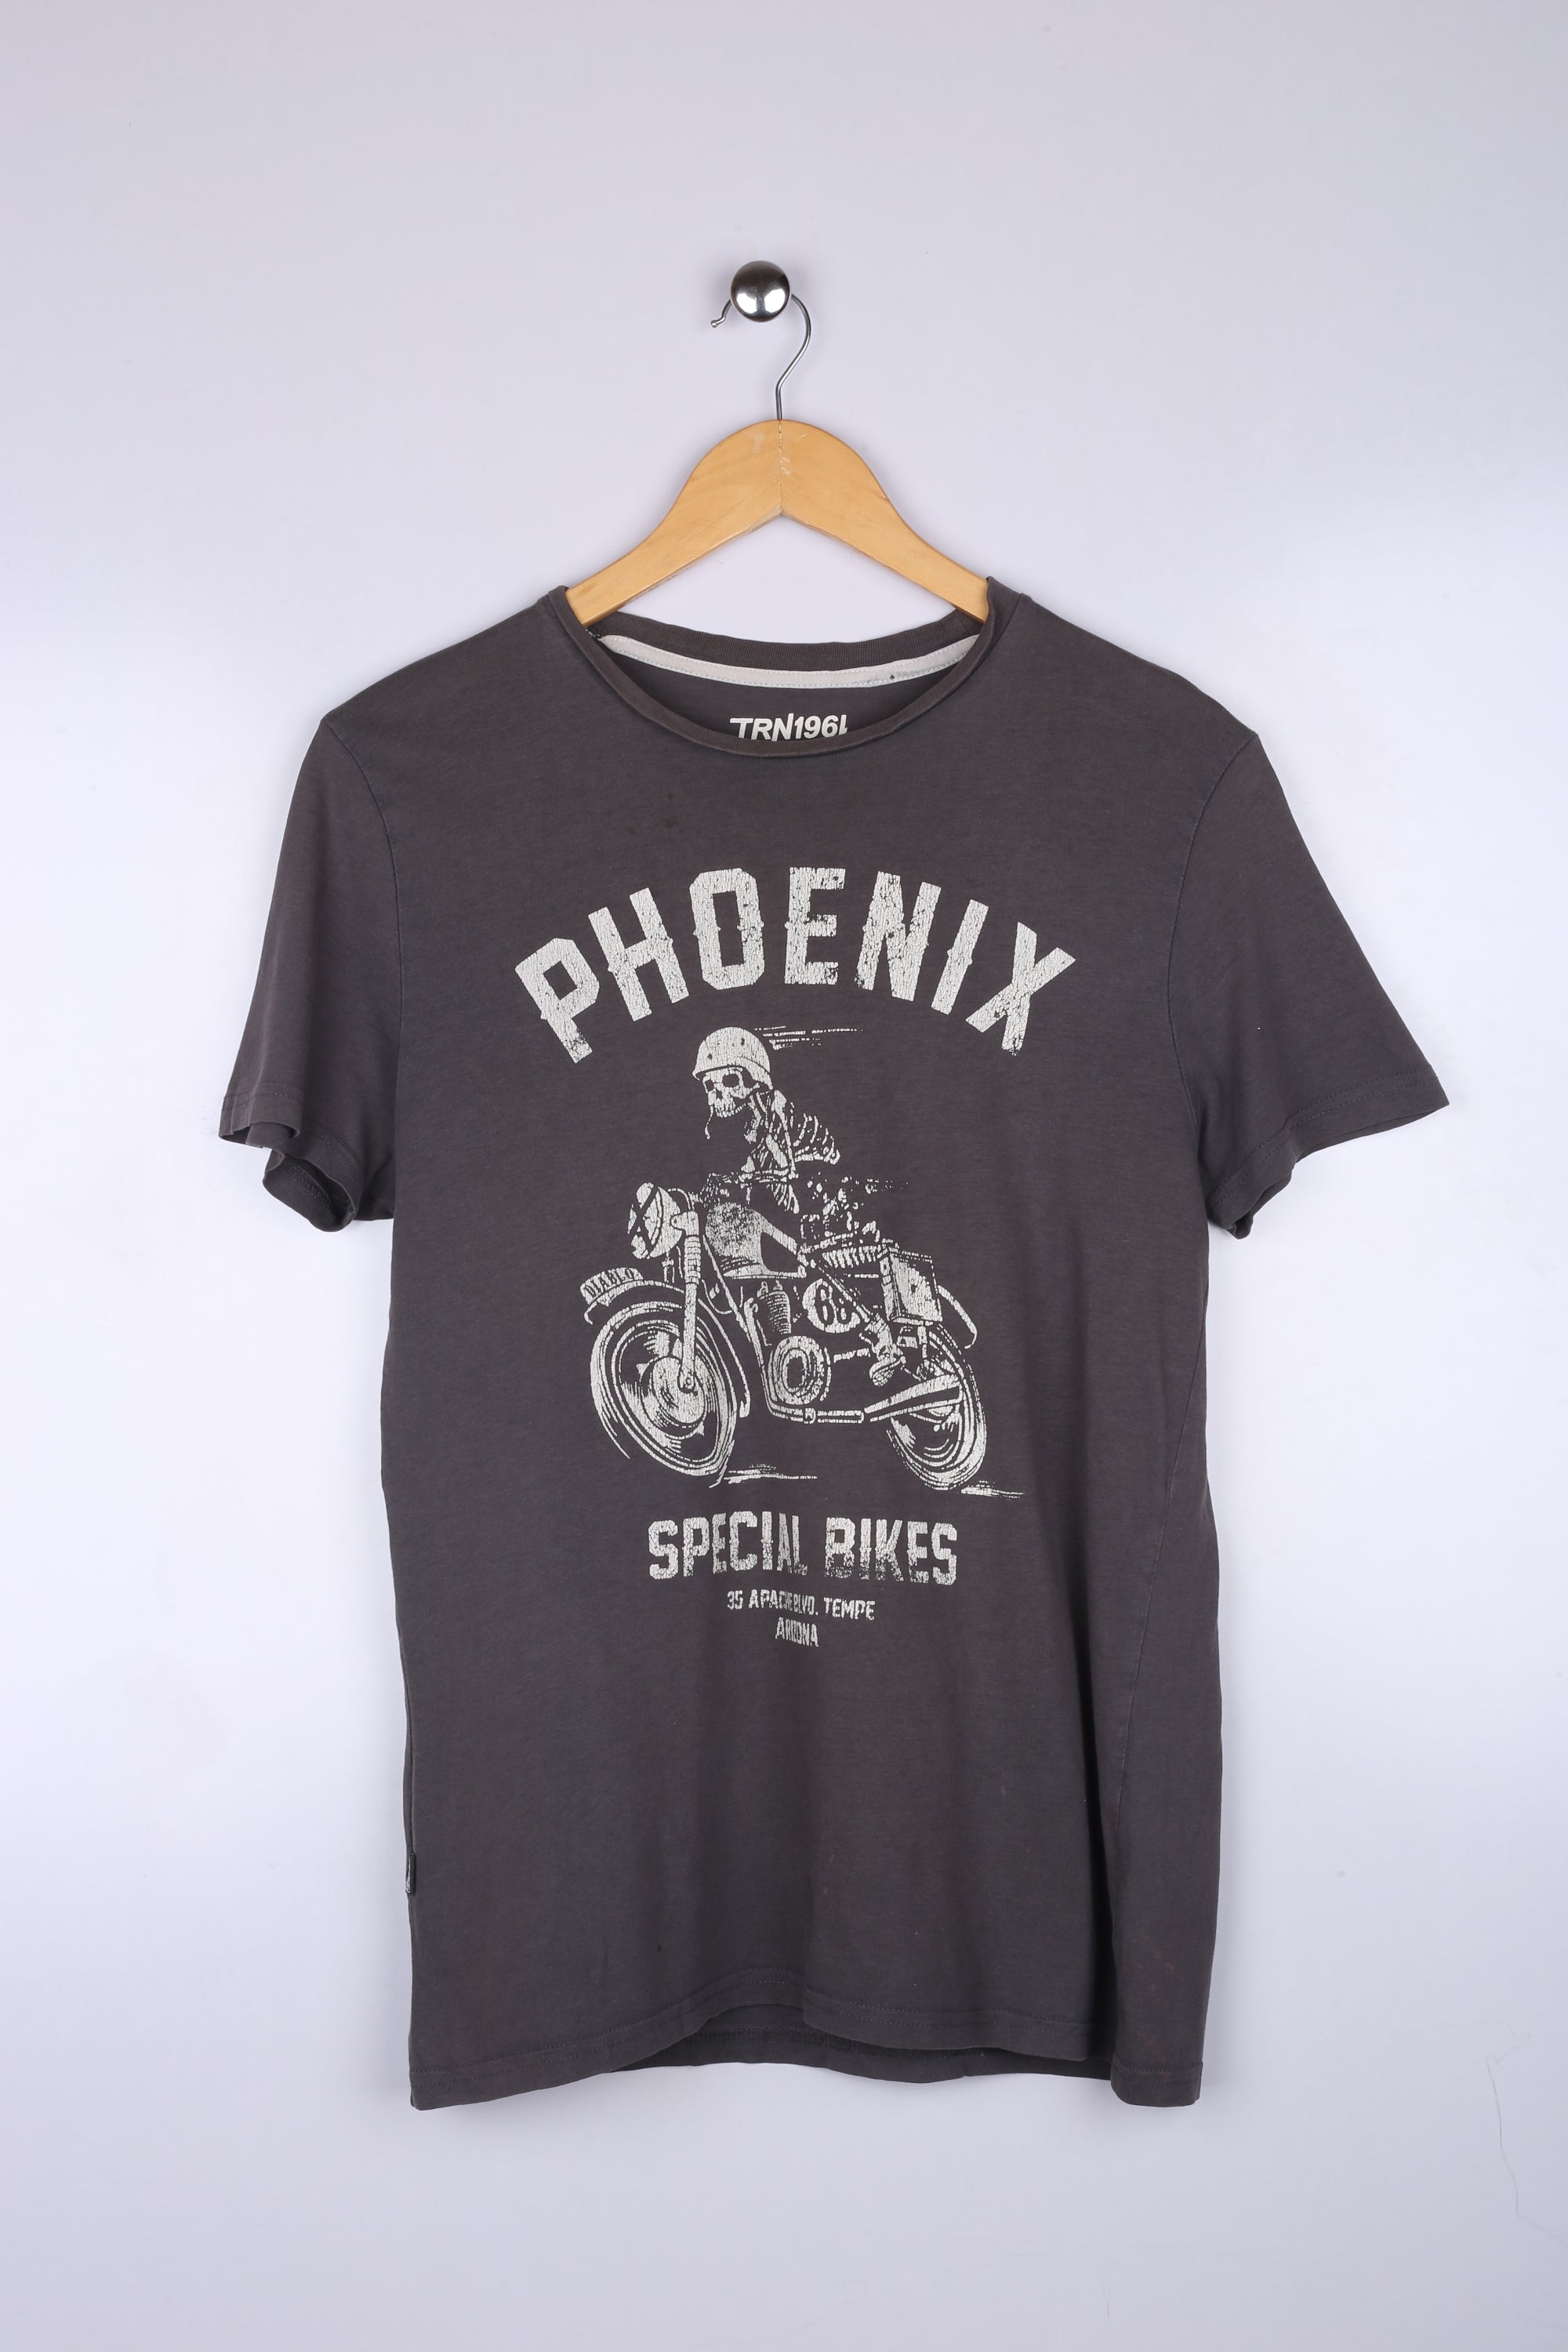 Vintage Phoenix Bikes Graphic Tee Grey